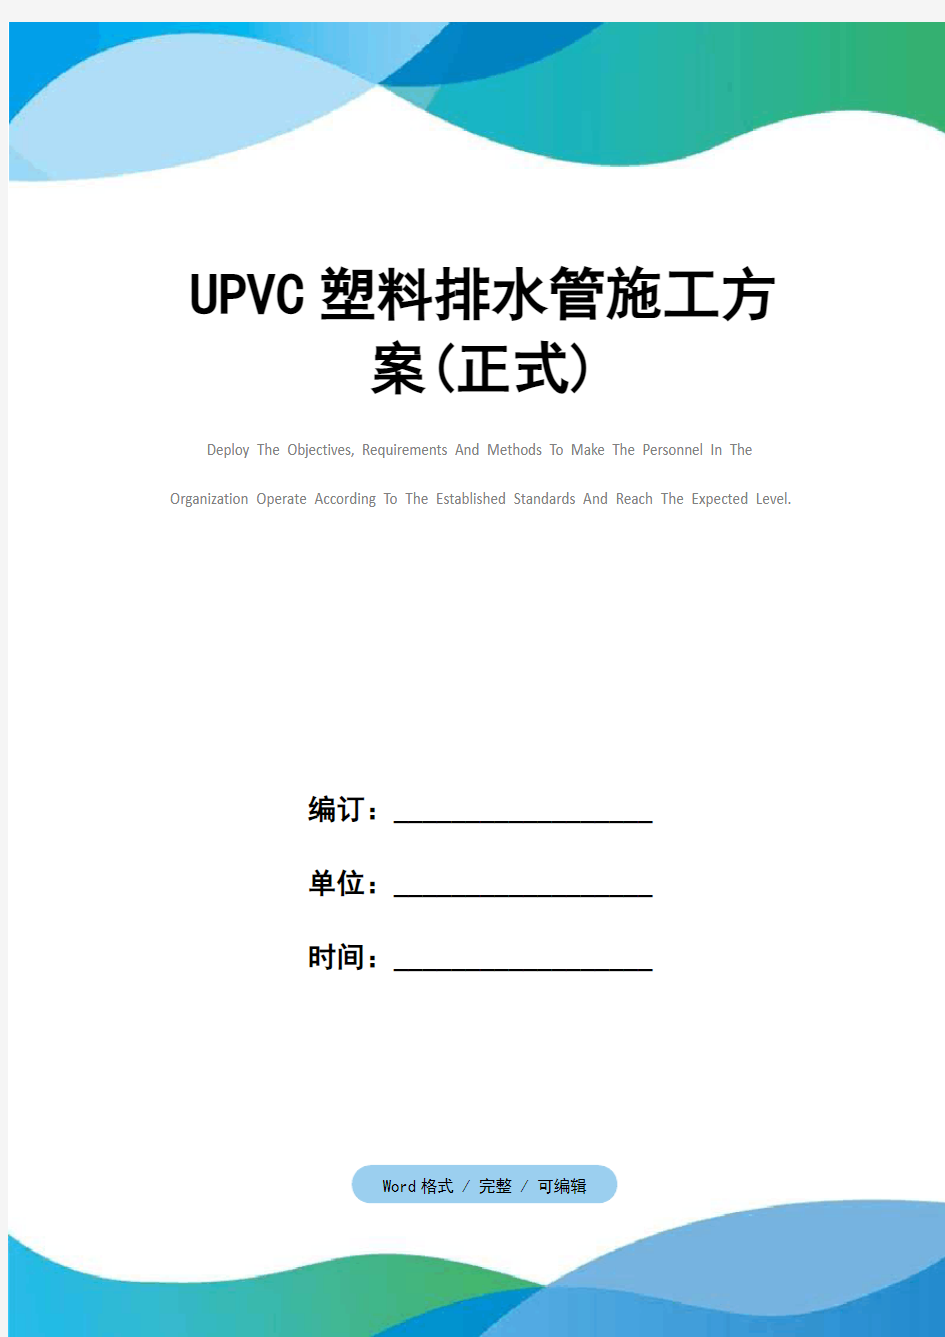 UPVC塑料排水管施工方案(正式)